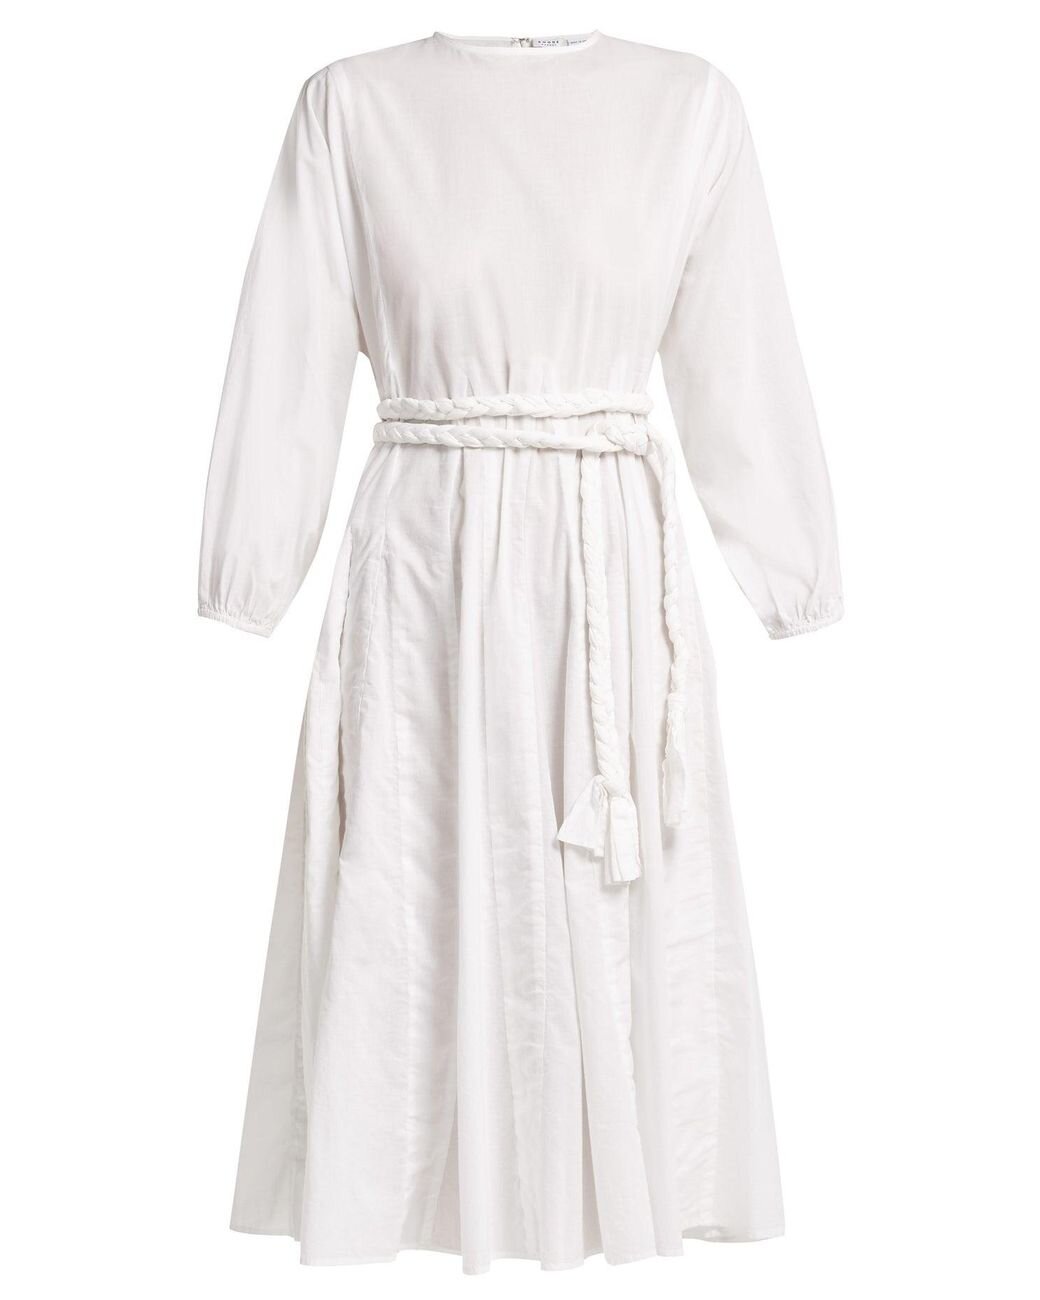 rhode-white-Devi-Braided-Belt-Cotton-Dress.jpg